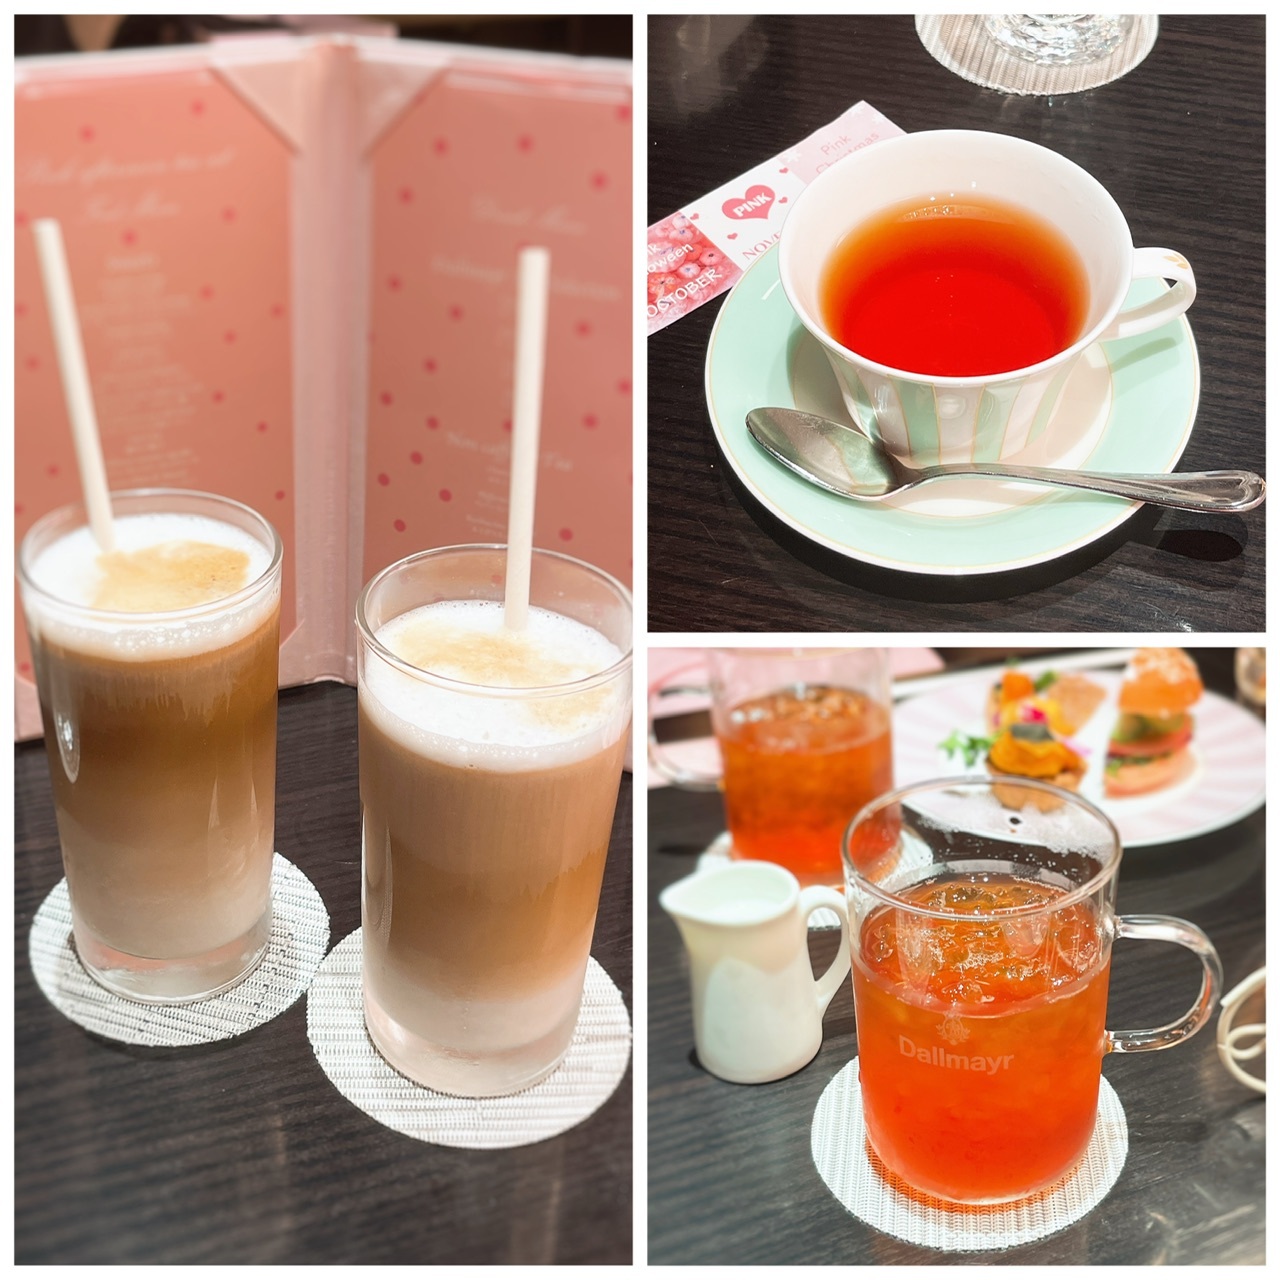 左：アイスラテ、右上：ダルマイヤー紅茶ダージリン、右下：ダルマイヤー紅茶アイスアールグレイ